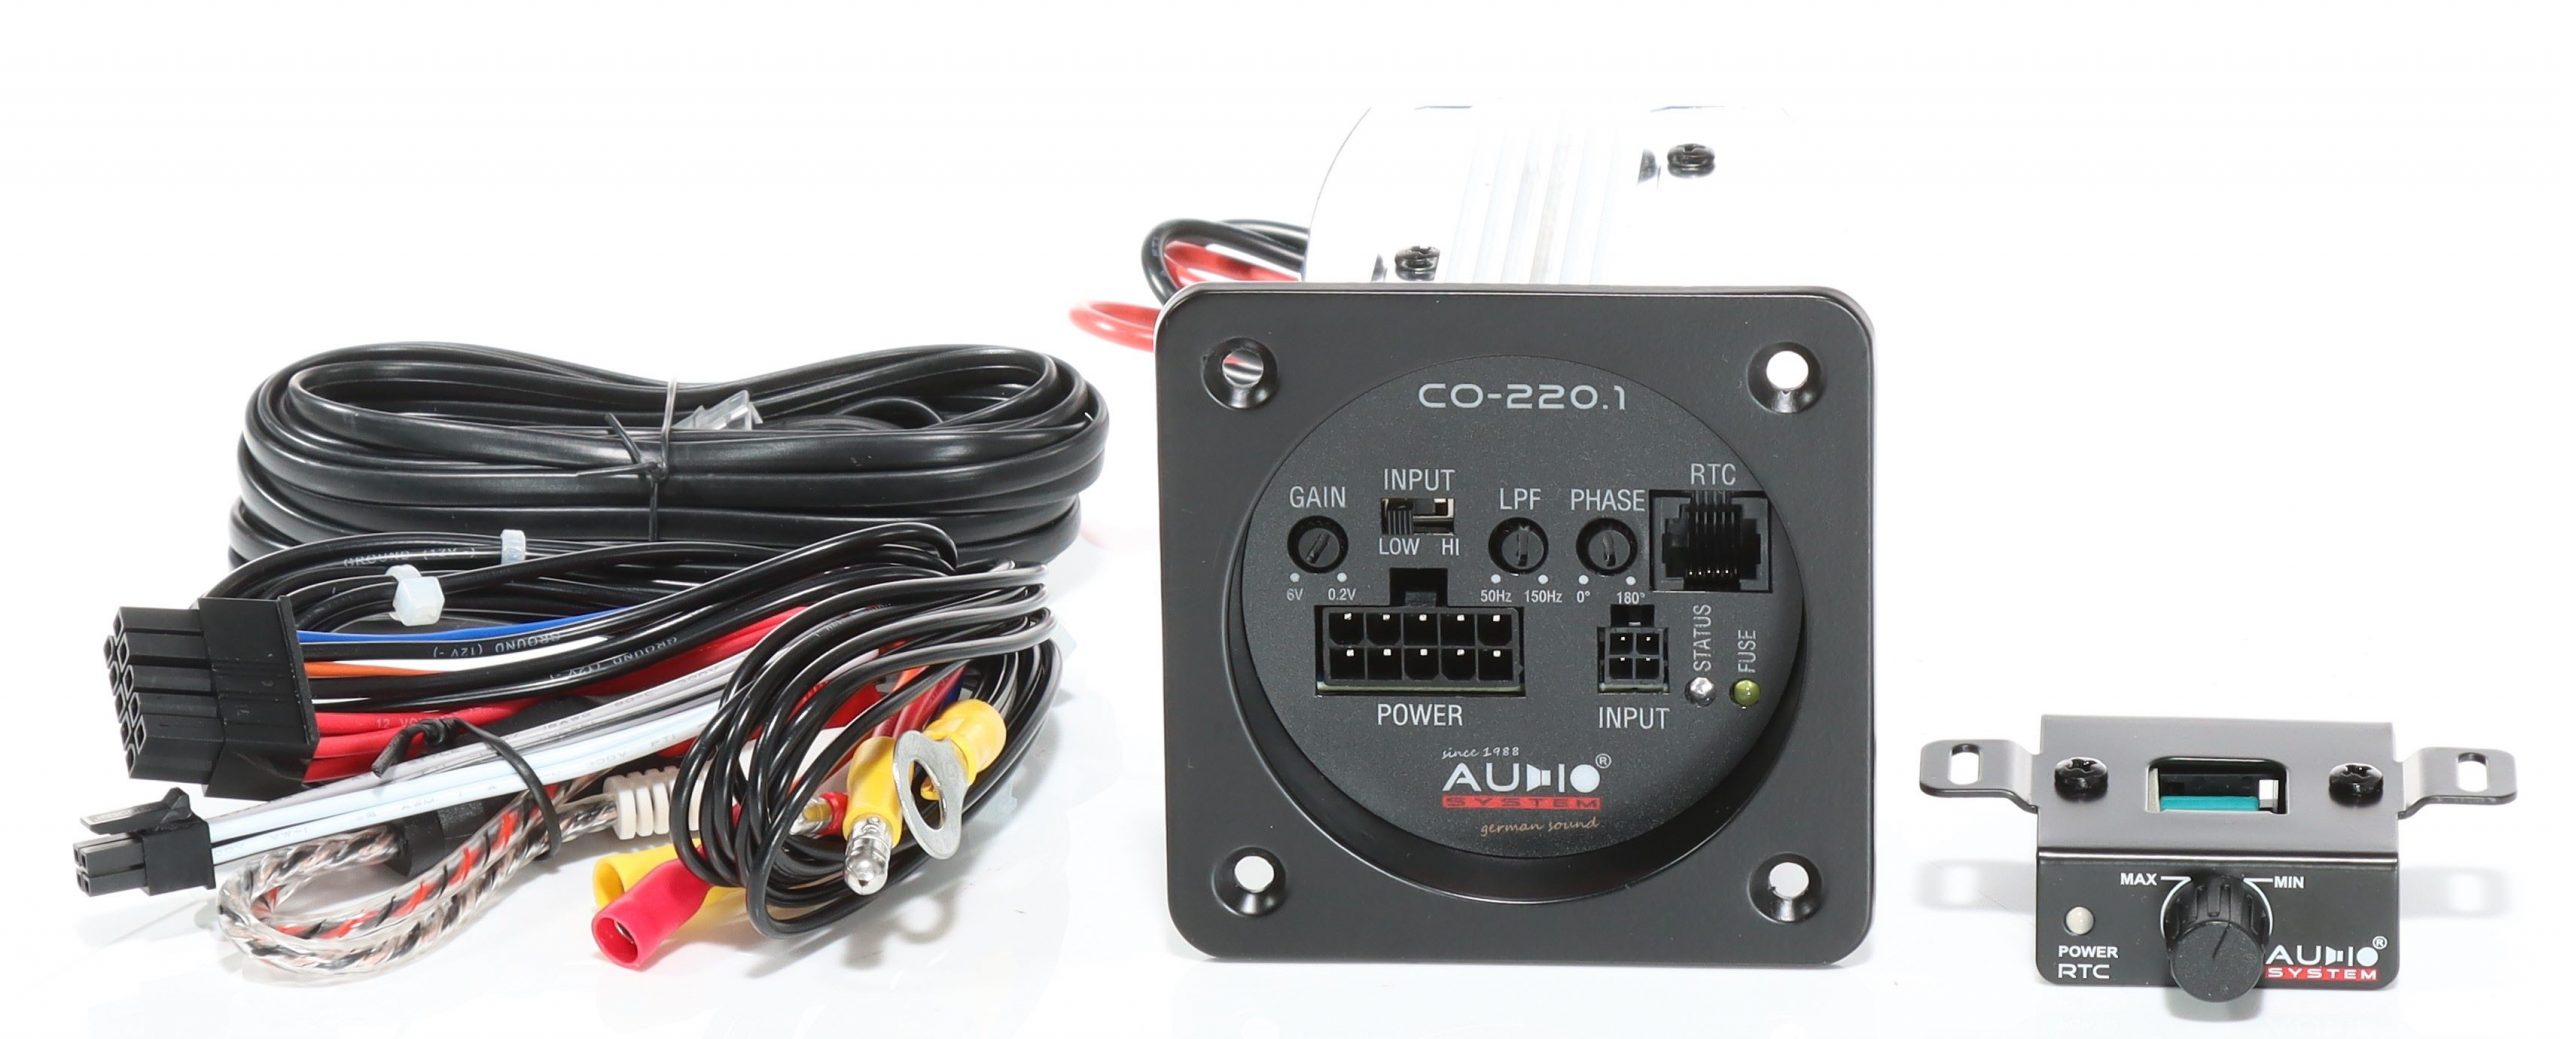 Audio System SUBFRAME M10 EVO ACTIVE 220 EVO Reserverad aktiv Subwoofer 250 Watt Bassgehäuse Bassreflexgehäuse mit M10 EVO + Verstärker + CO-220.1